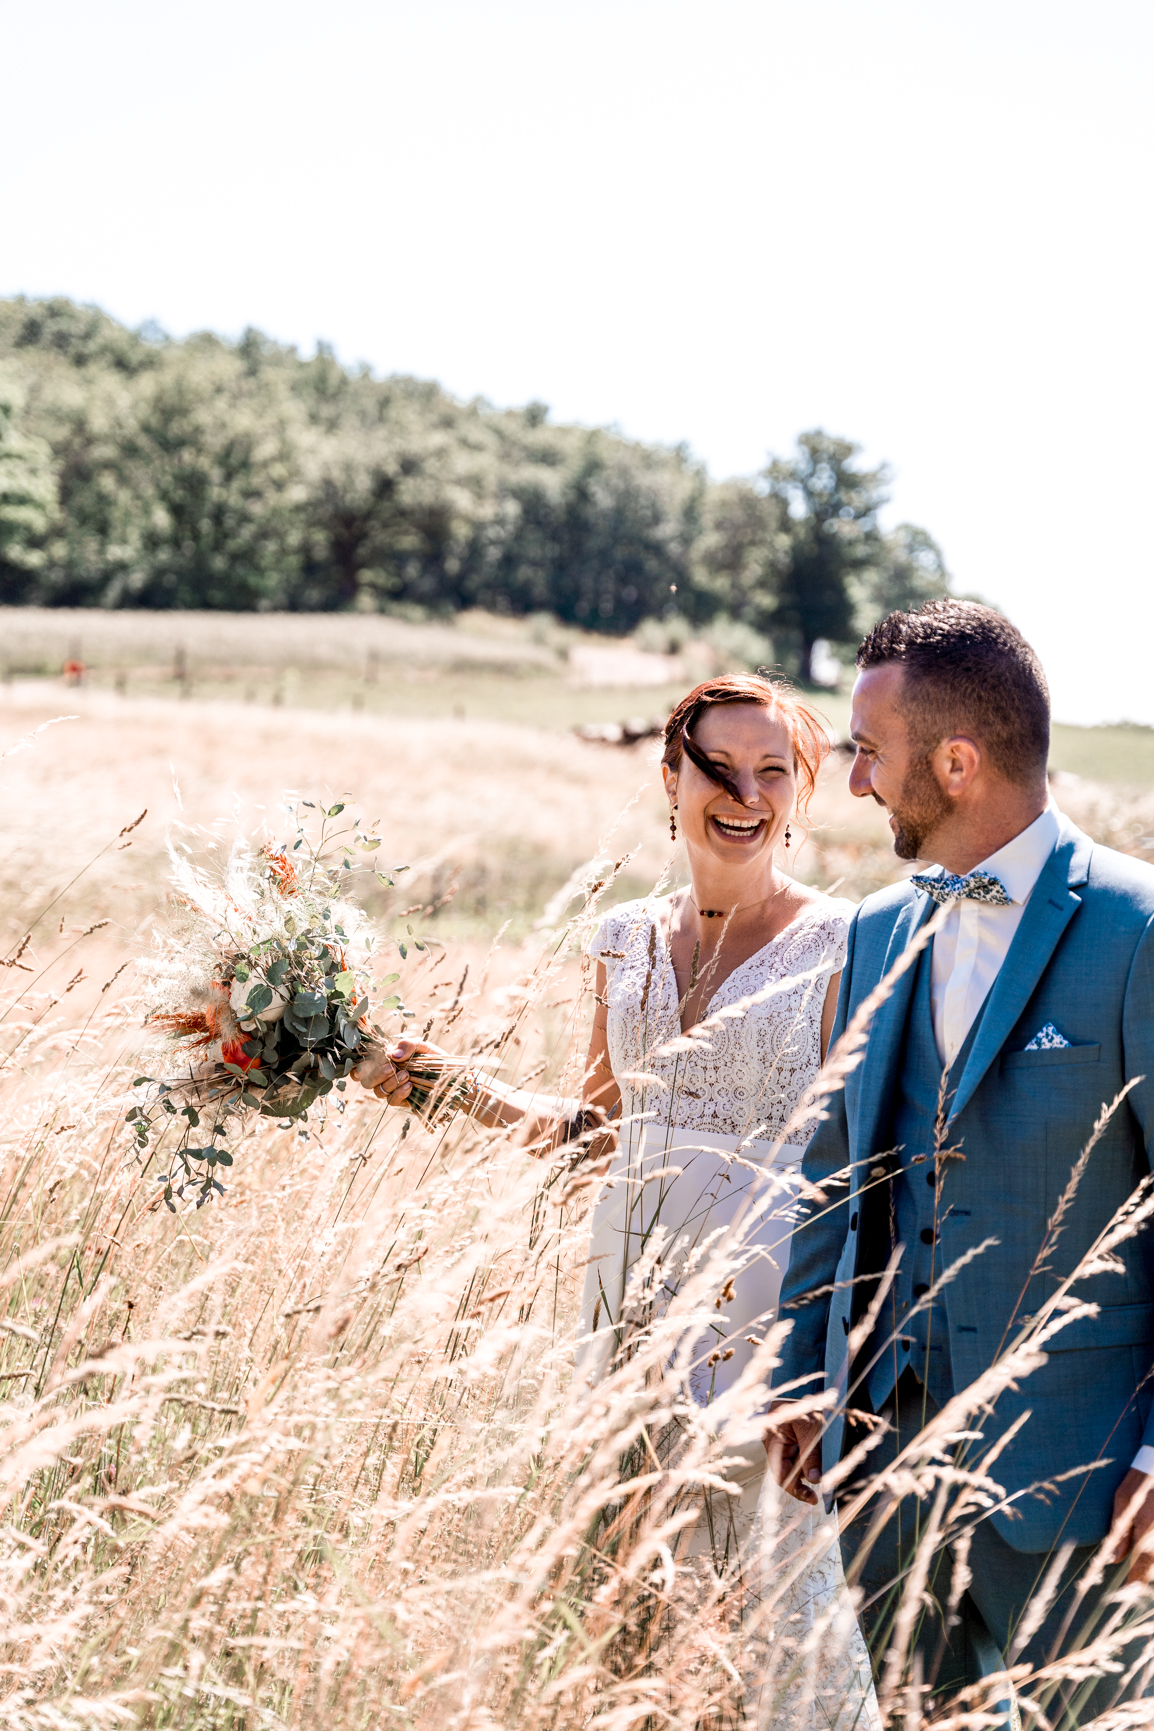 Amelie Charlet photographe reportage photo mariage couple marié dans les champs